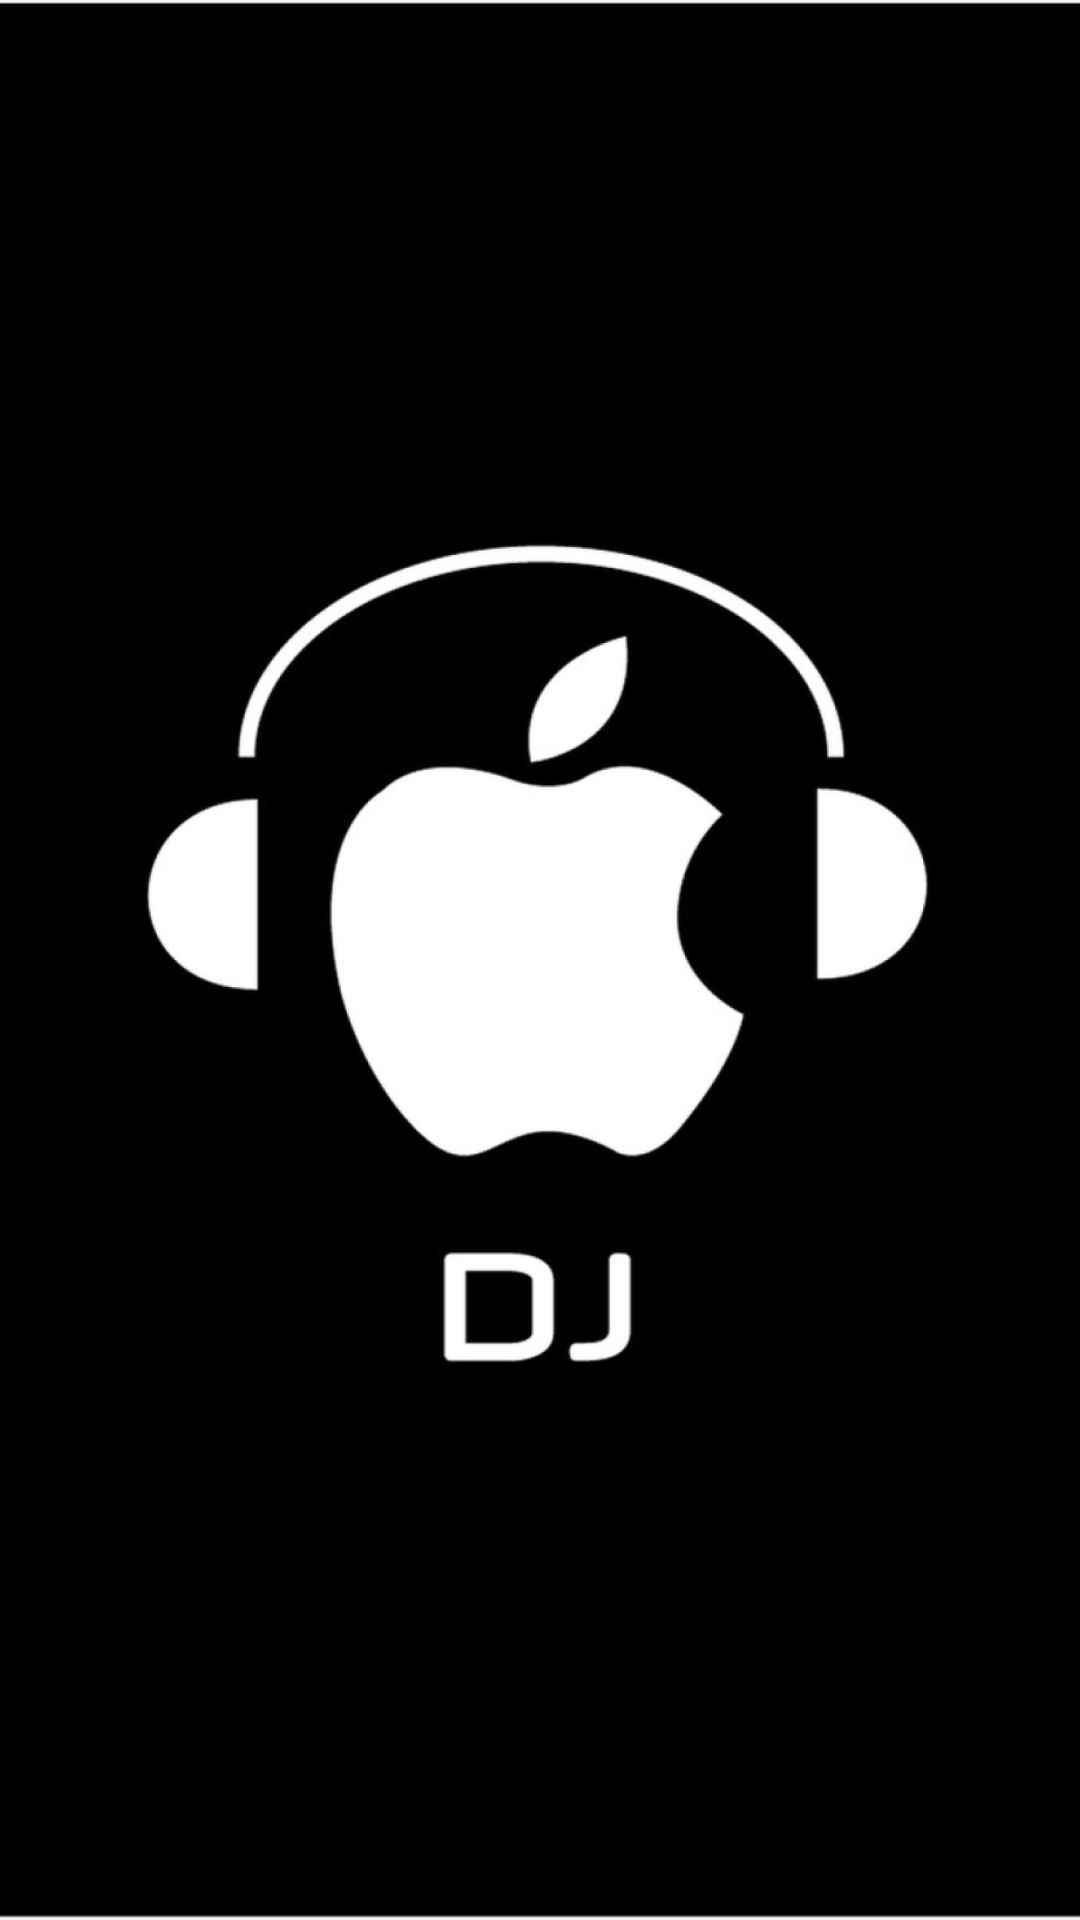 Apple DJ wallpaper 1080x1920